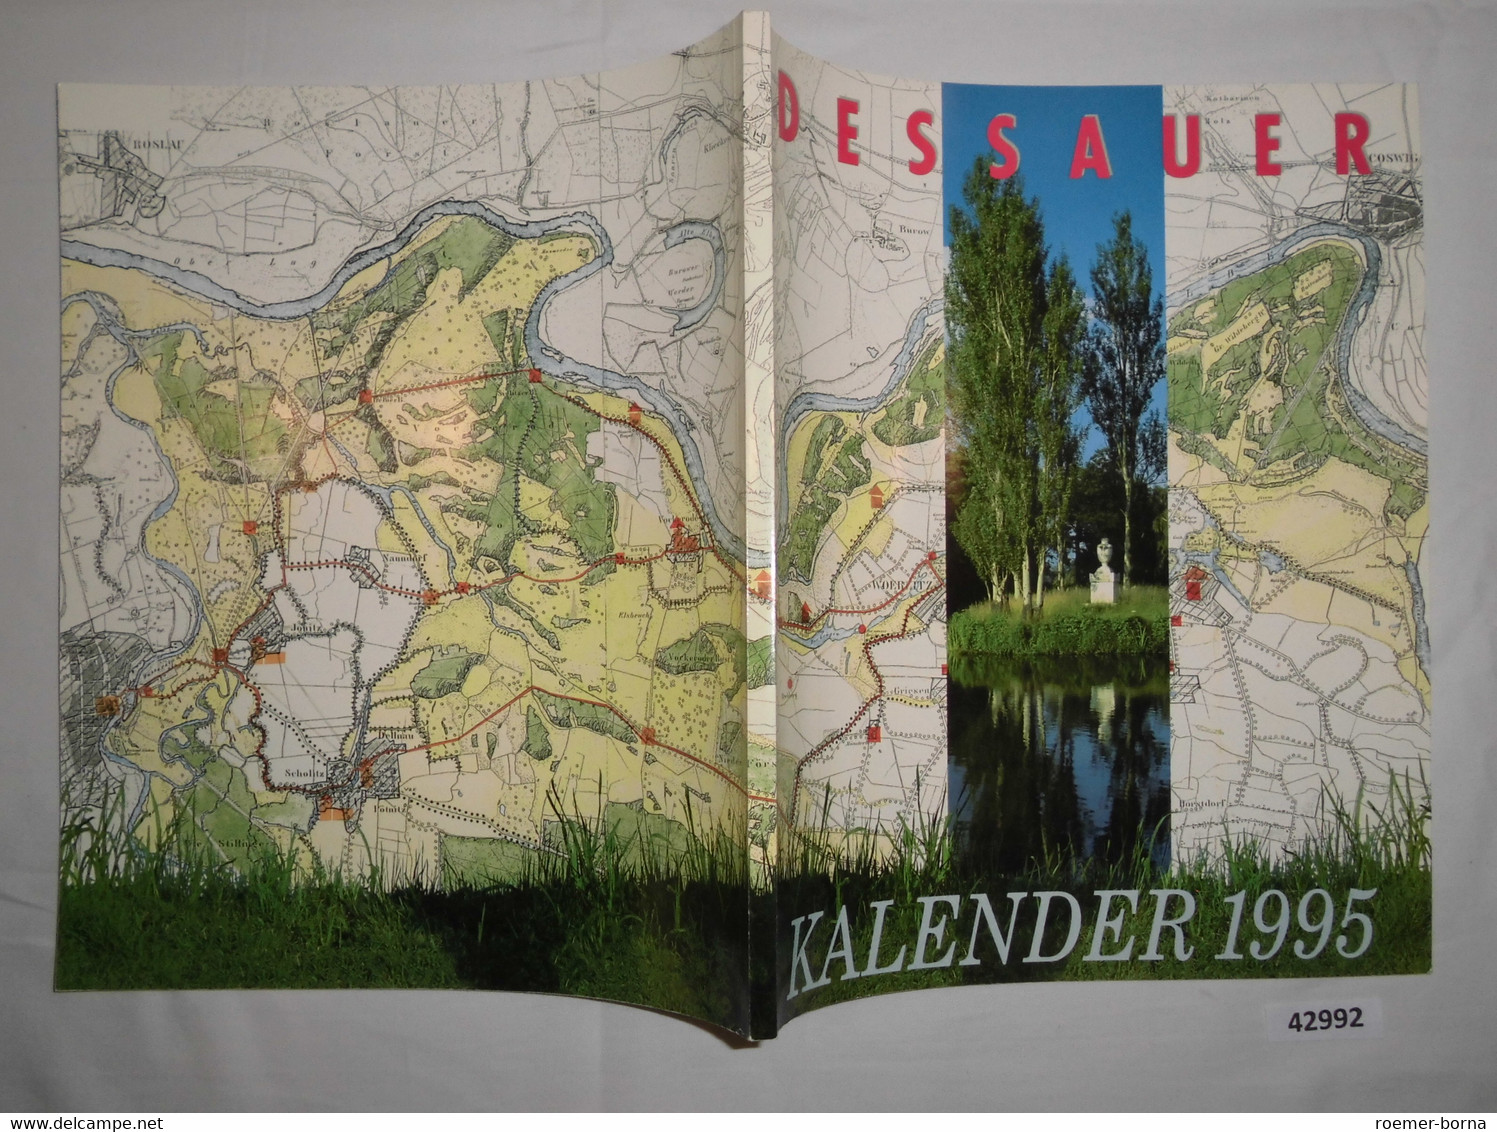 Dessauer Kalender 1995 (39. Jahrgang) - Calendarios